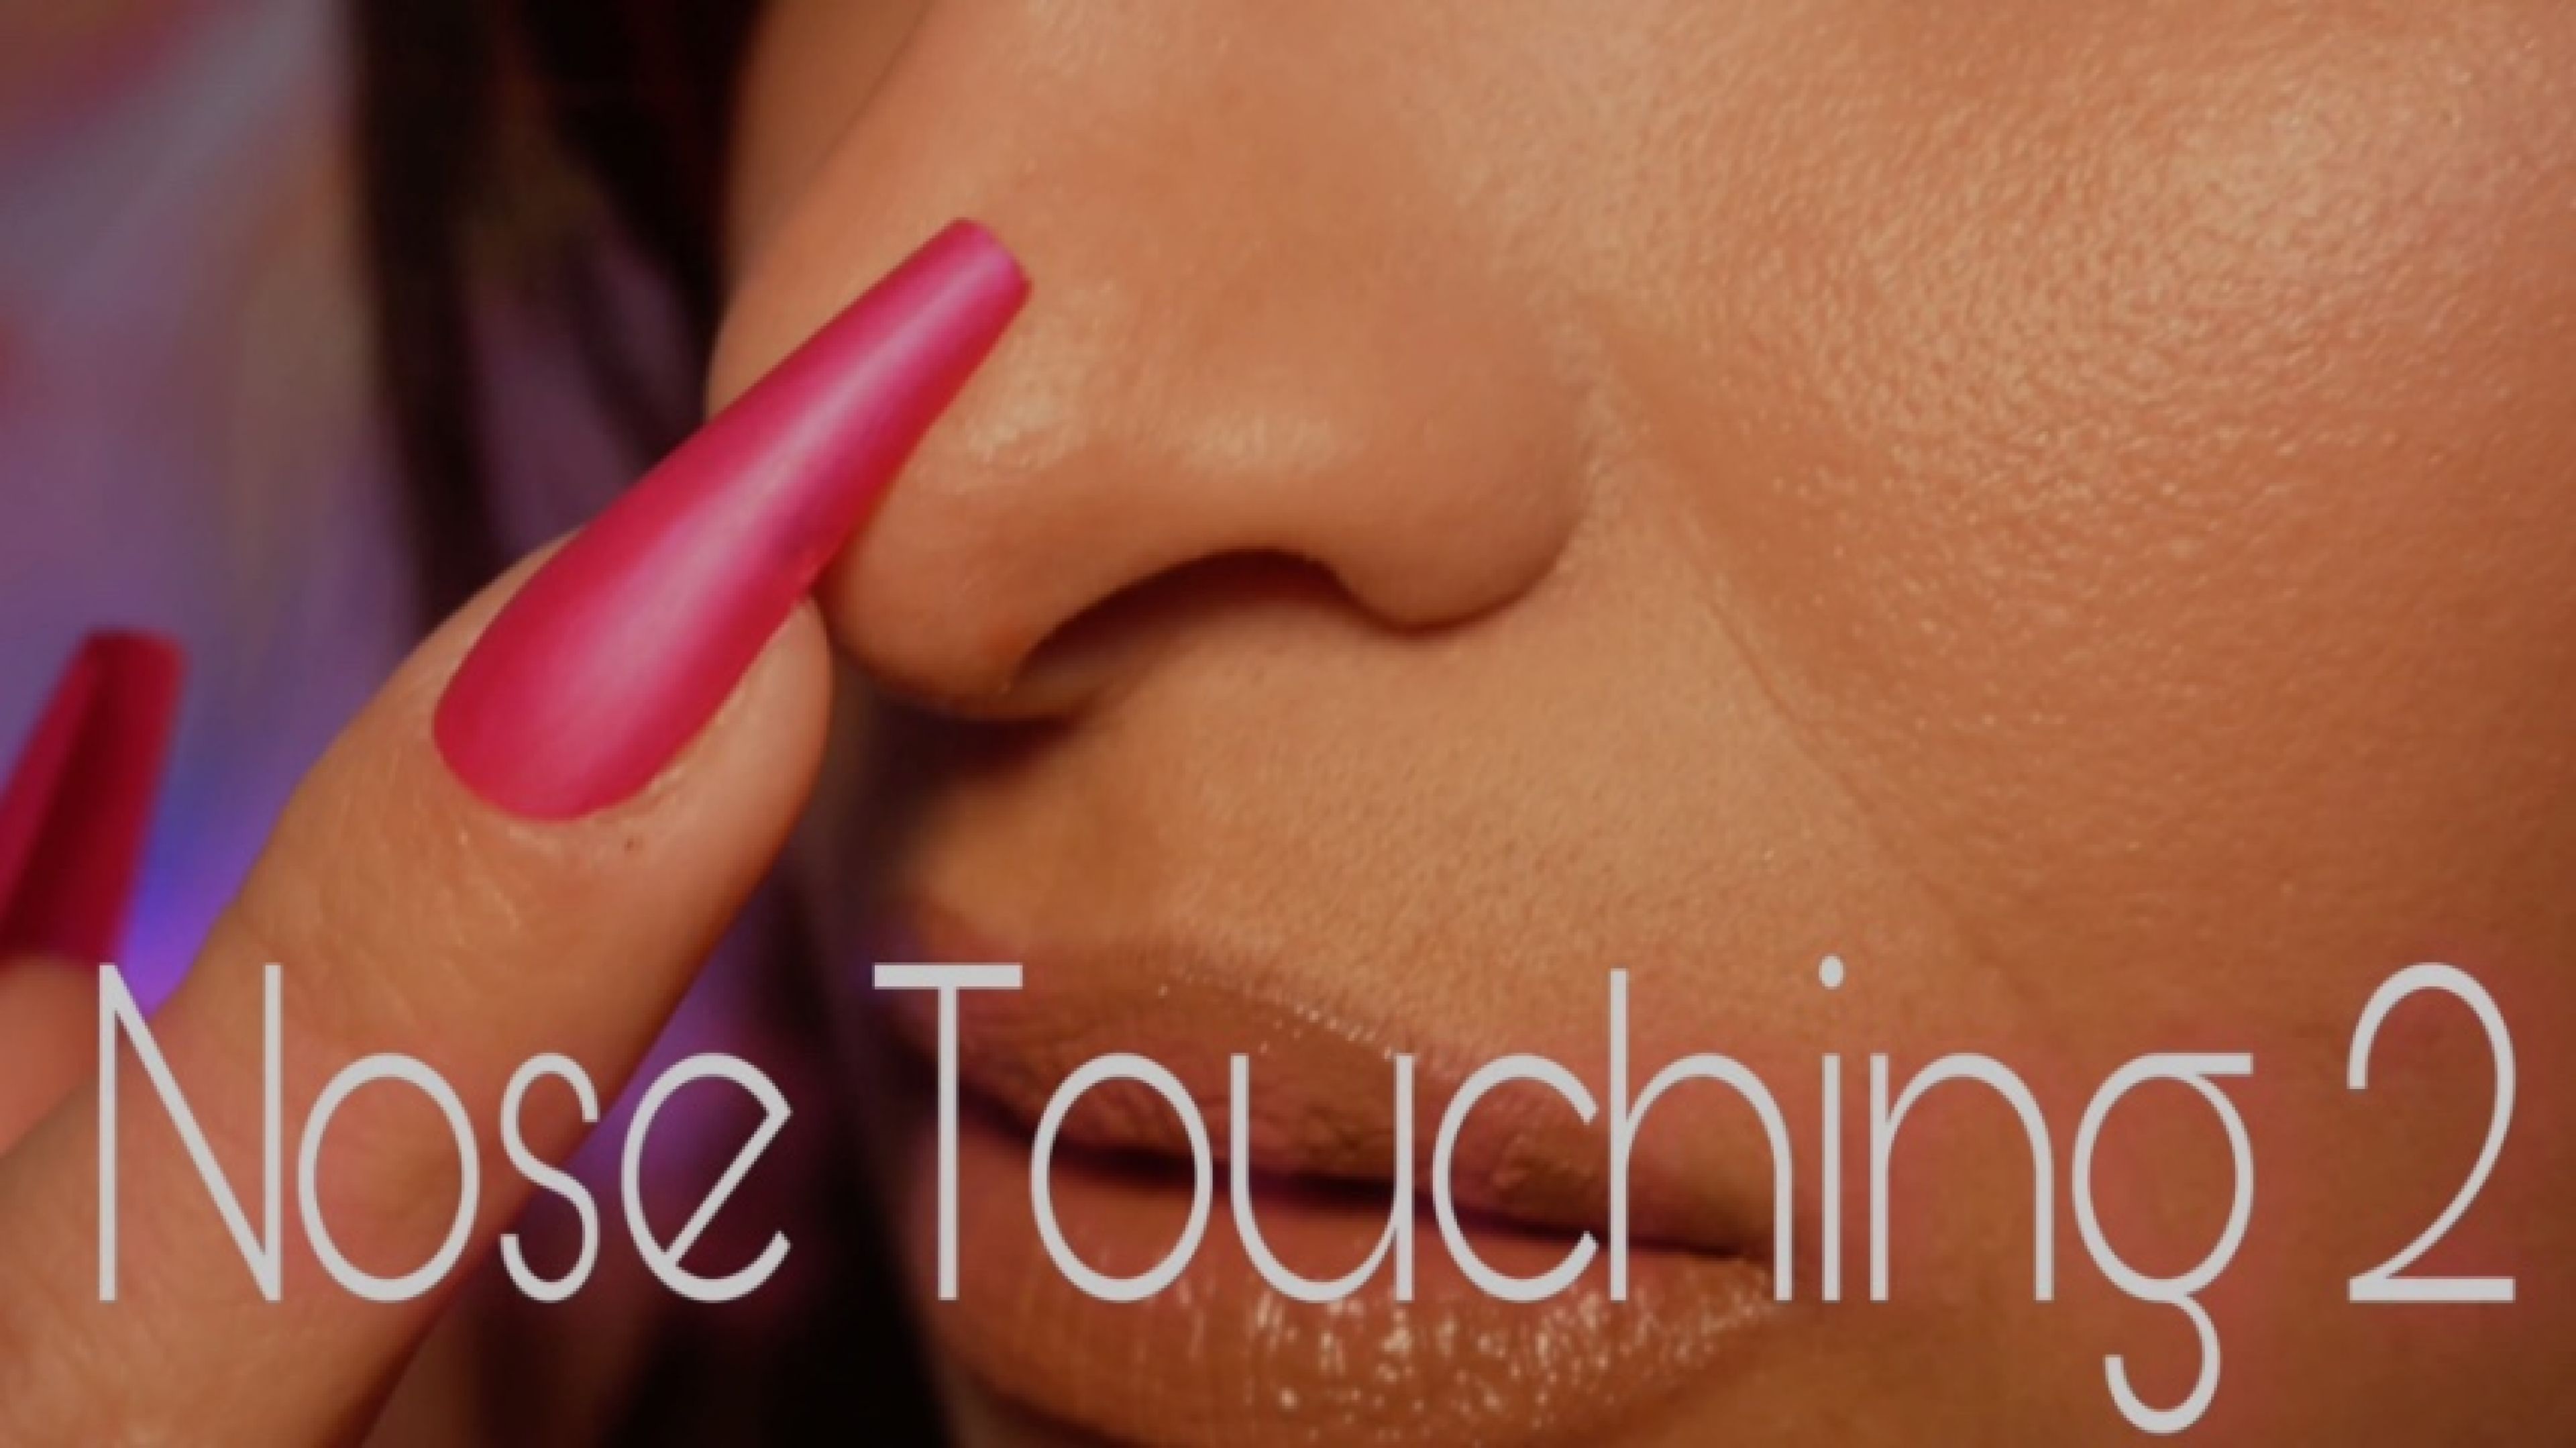 Nose Touching 2